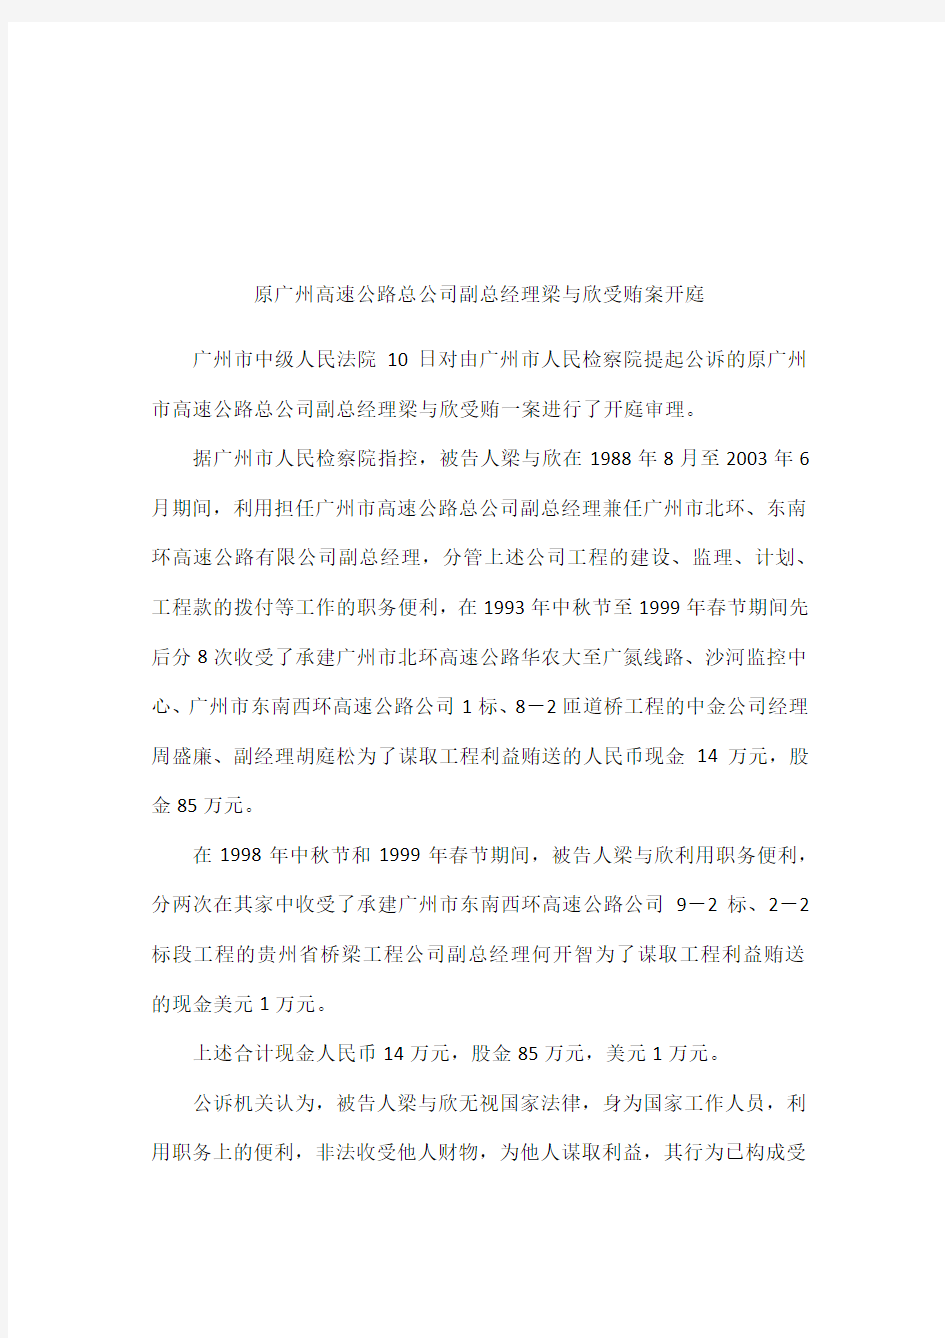 原广州高速公路总公司副总经理梁与欣受贿案开庭